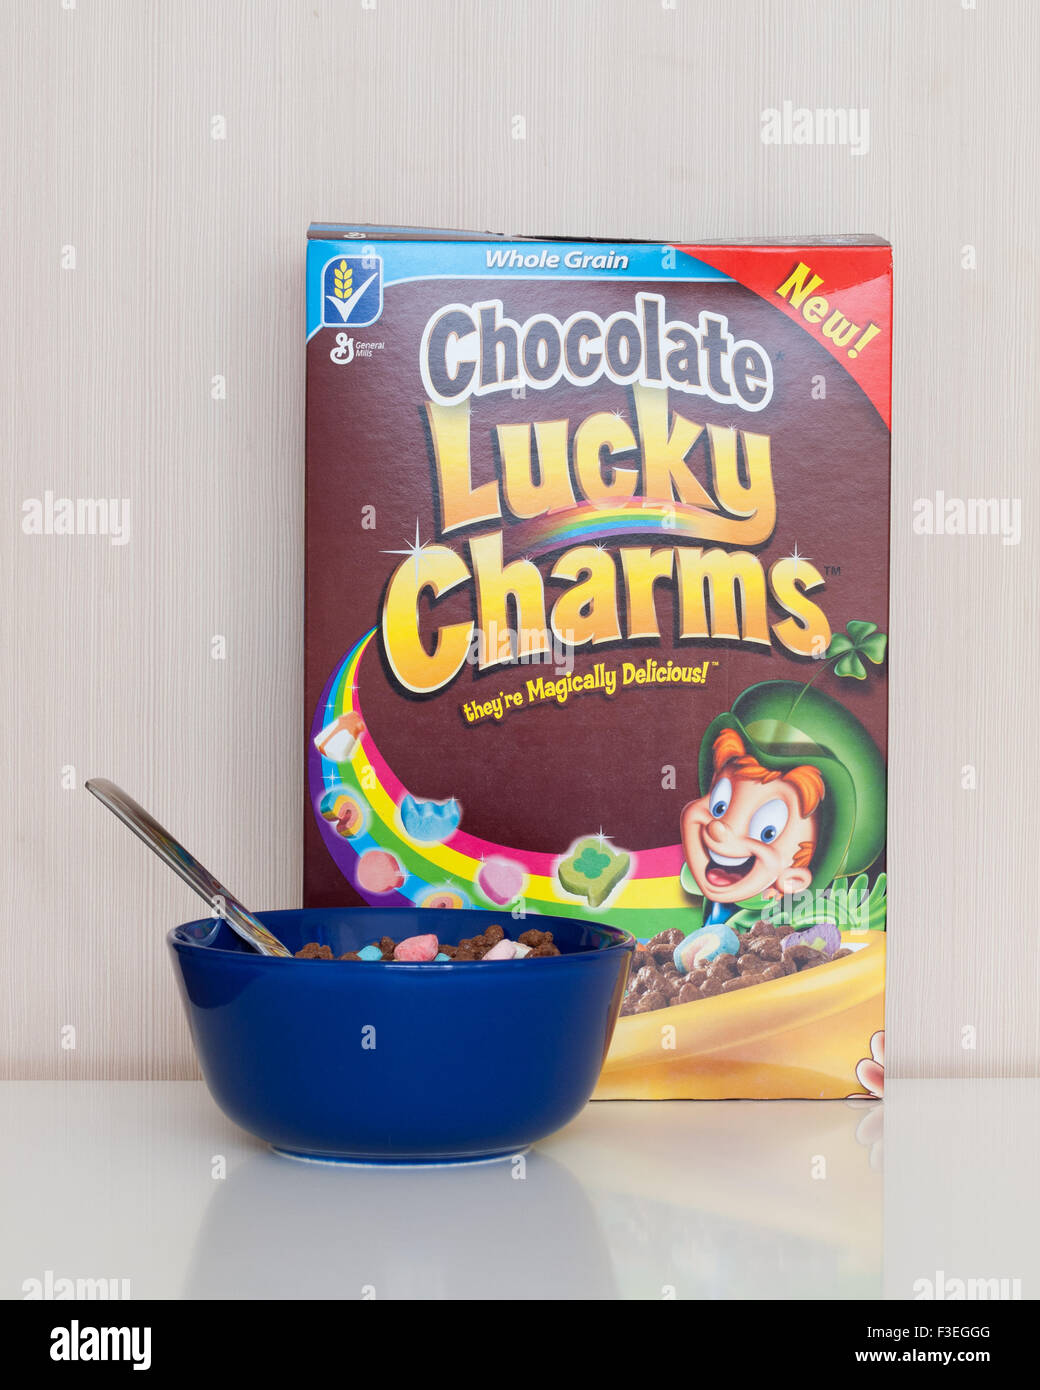 Un cuadro y el tazón de chocolate, cereales Lucky Charms